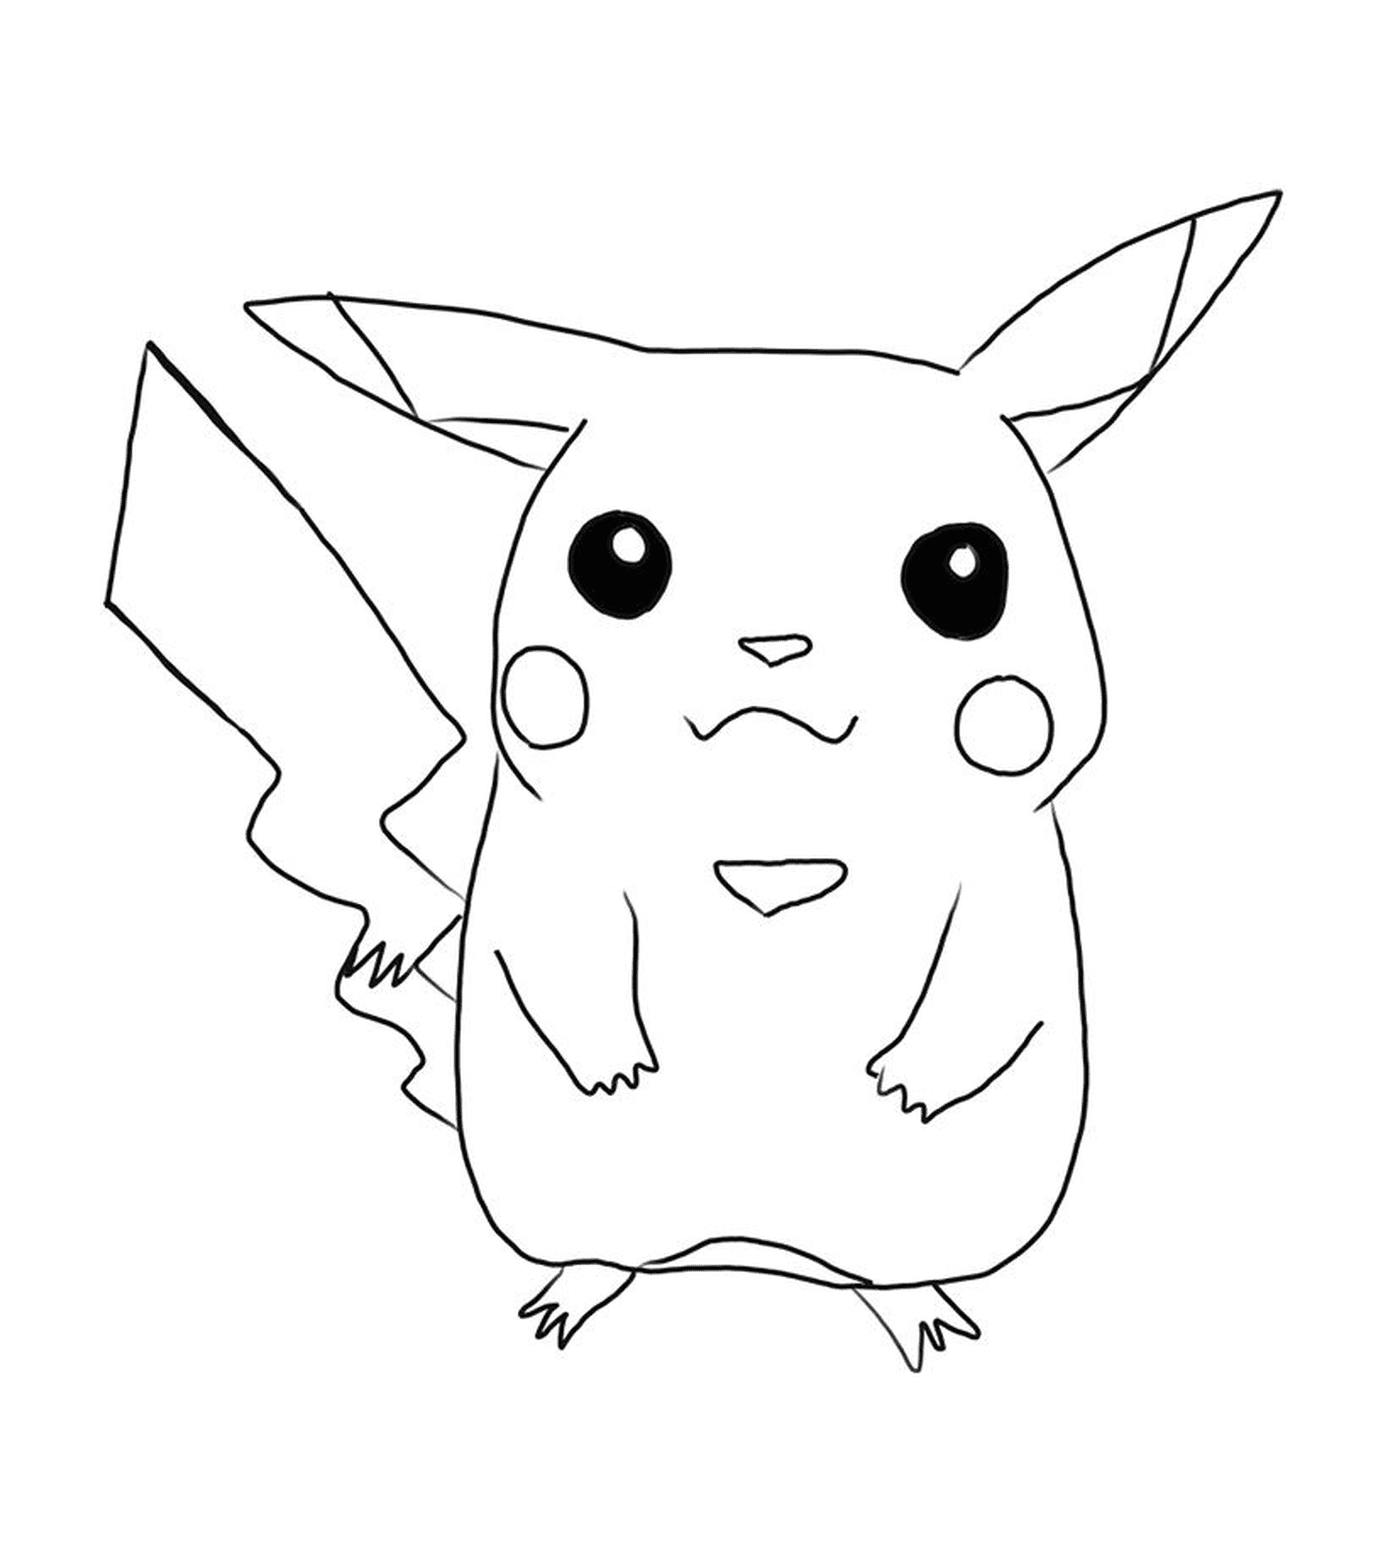  Pikachu, 装饰性象征物 